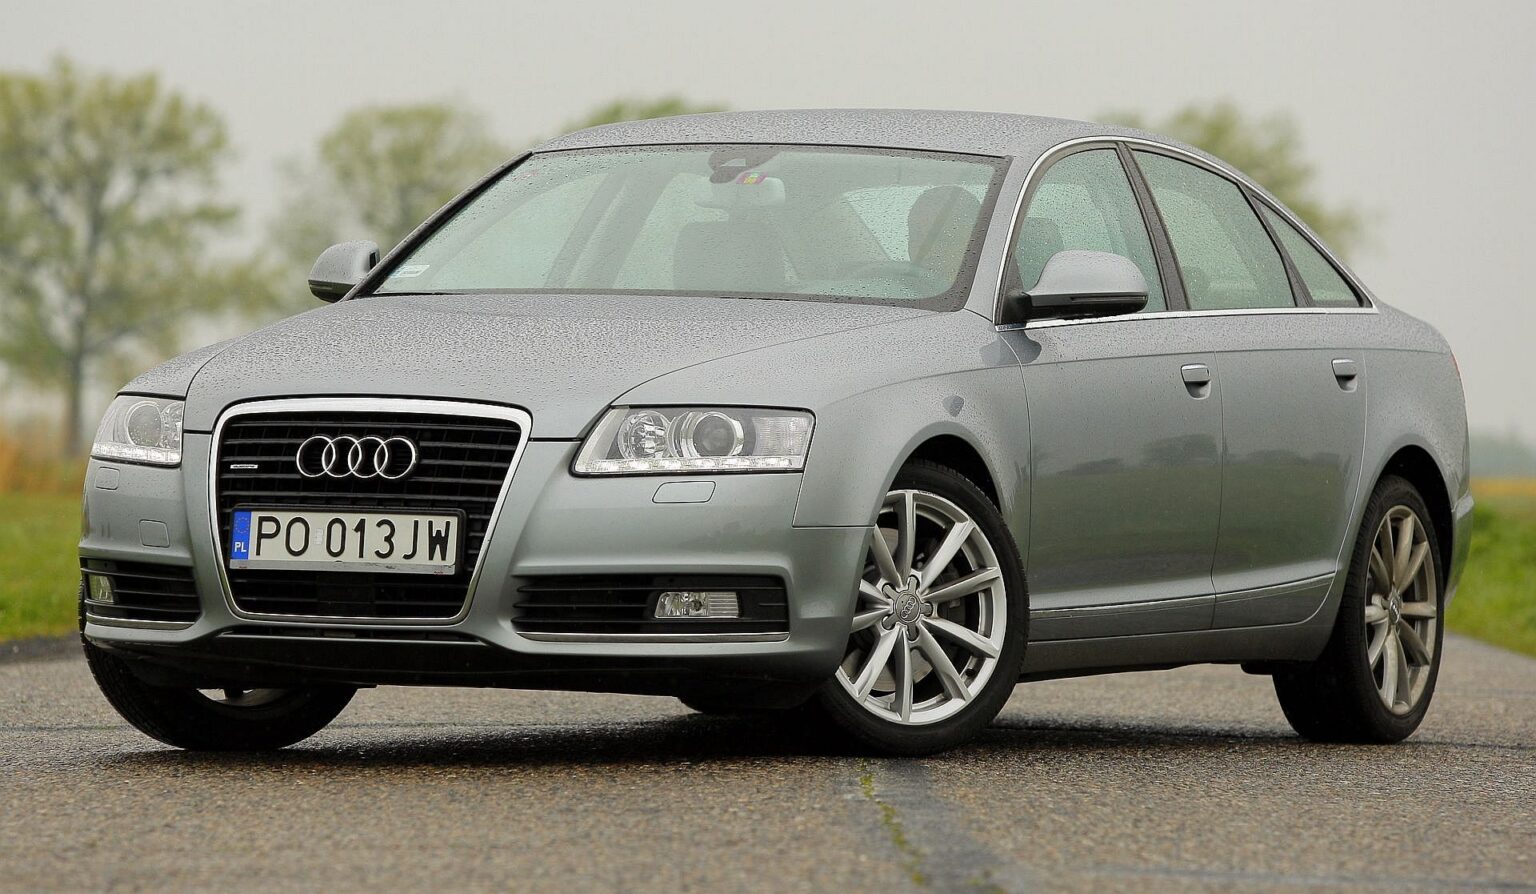 Używane Audi A6 (C6) i Audi A6 (C7) którą generację wybrać?